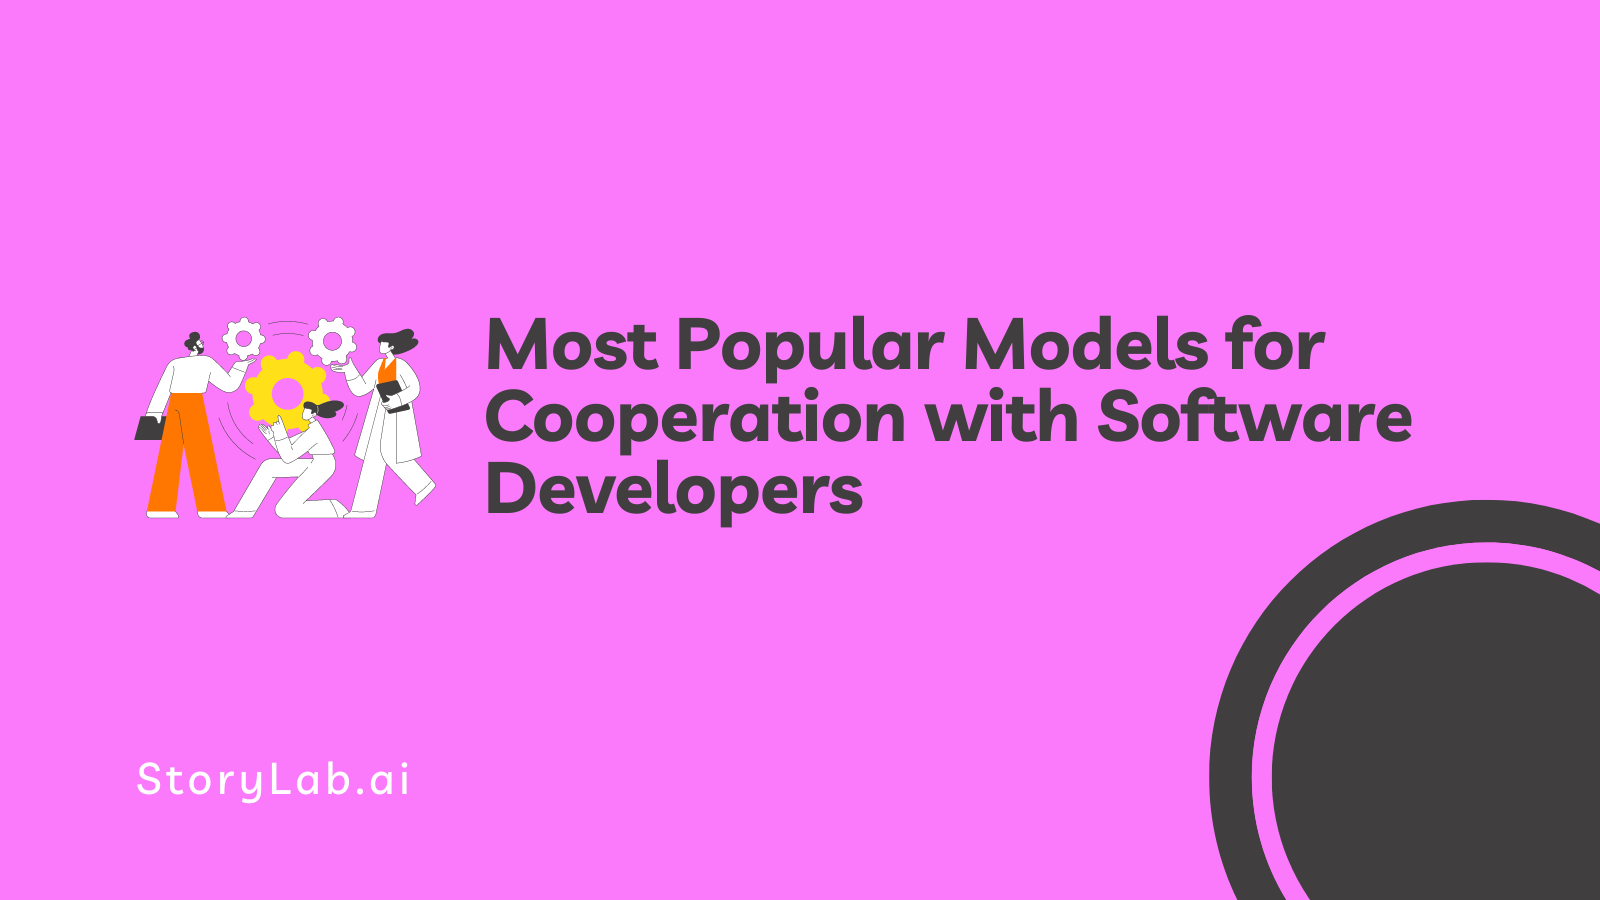 Modelos mais populares para cooperação com desenvolvedores de software